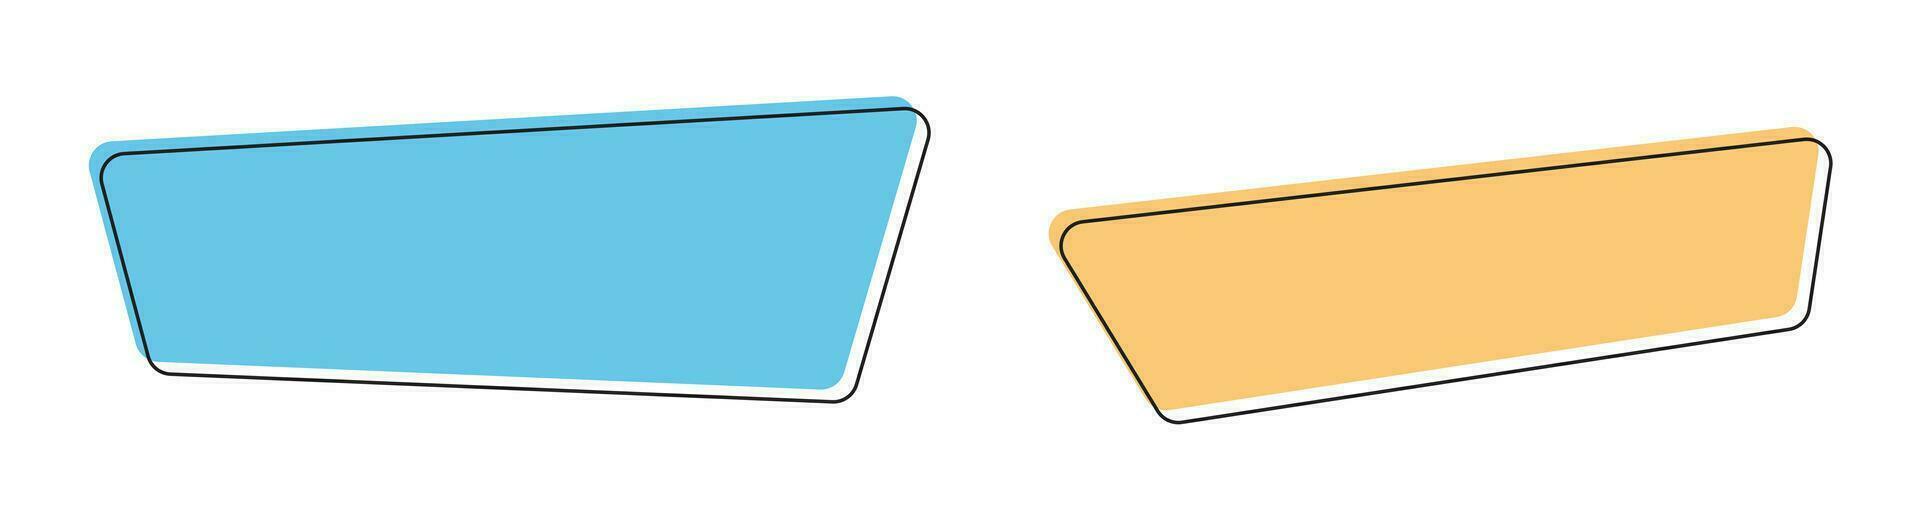 geométrico de colores pancartas en plano estilo vector ilustración aislado en blanco